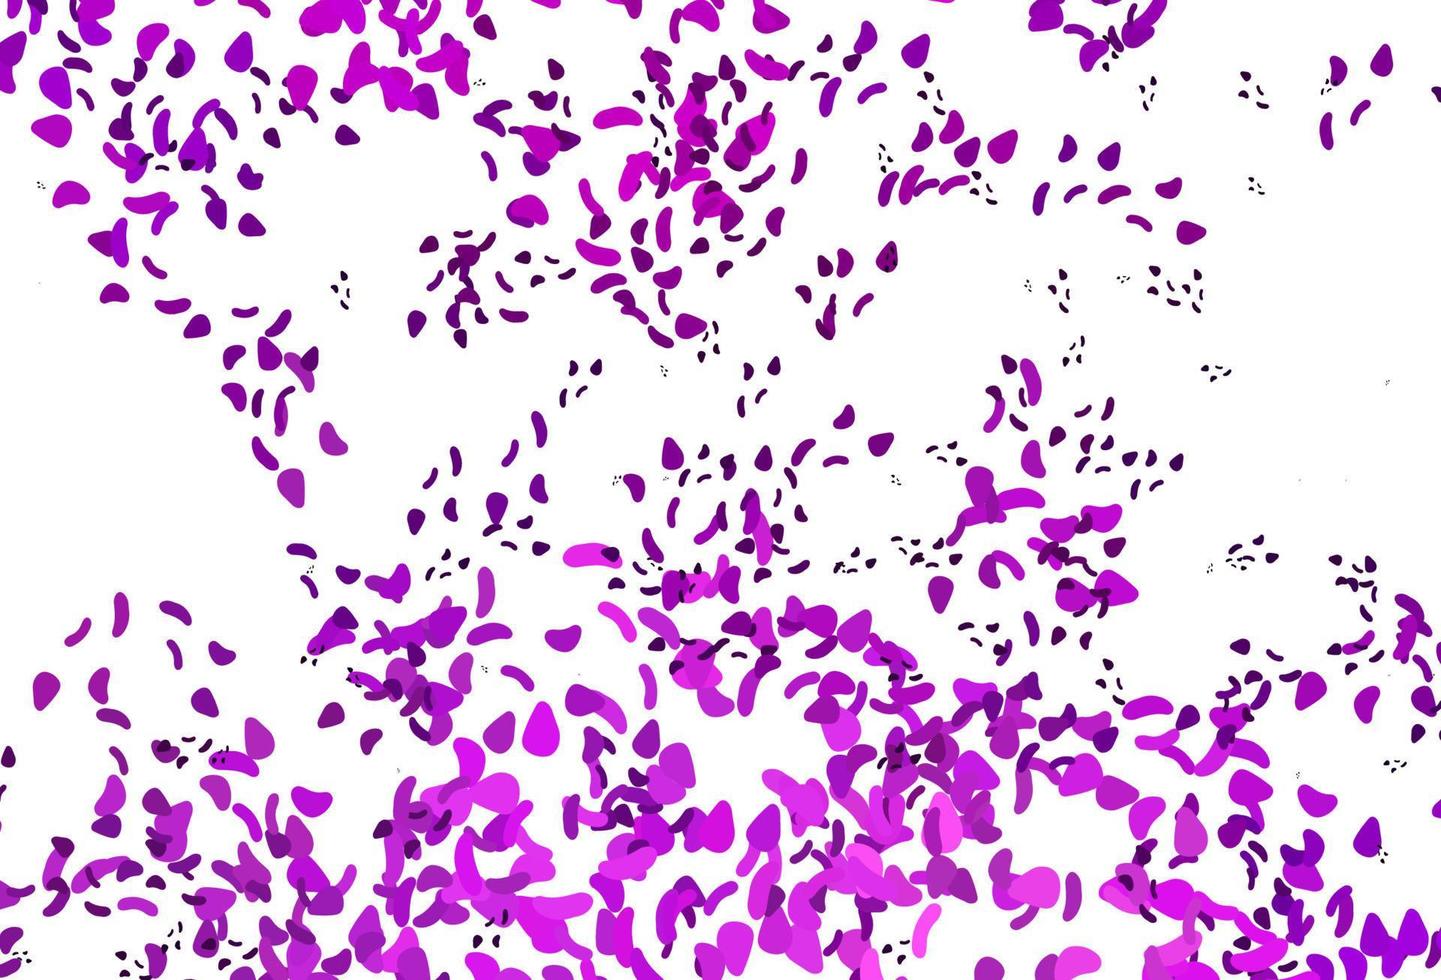 telón de fondo de vector de color púrpura claro con formas abstractas.